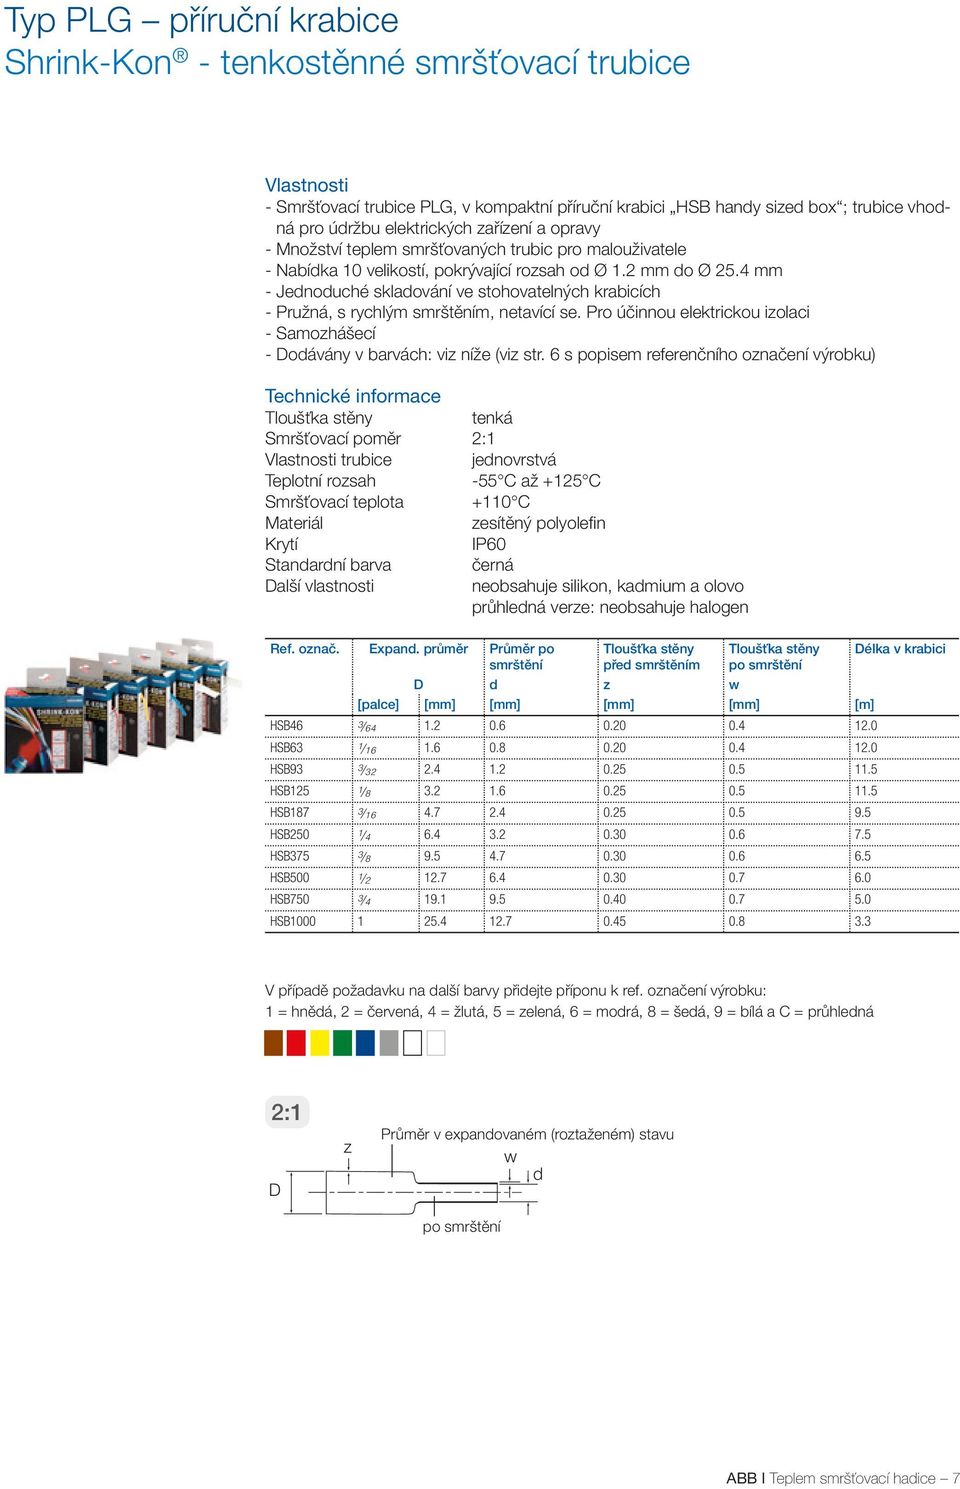 4 mm - Jenouché sklaování ve stohovatelných krabicích - Pružná, s rychlým m, netavící se. Pro účinnou elektrickou izolaci - Samozhášecí - oávány v barvách: viz níže (viz str.